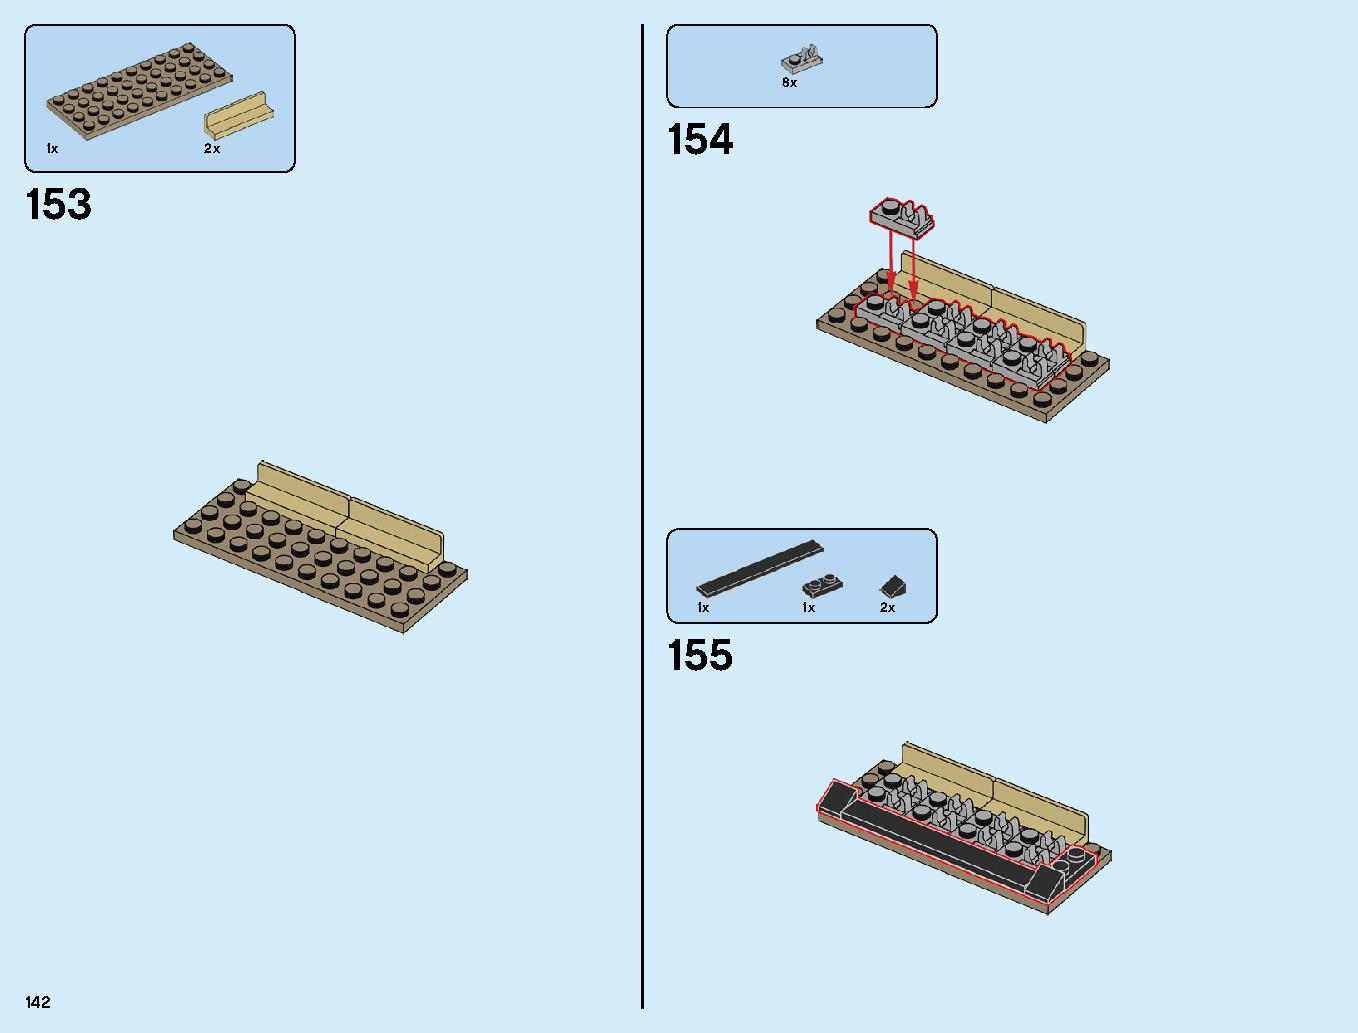 ニンジャゴーシティ・ポートパーク 70657 レゴの商品情報 レゴの説明書・組立方法 142 page